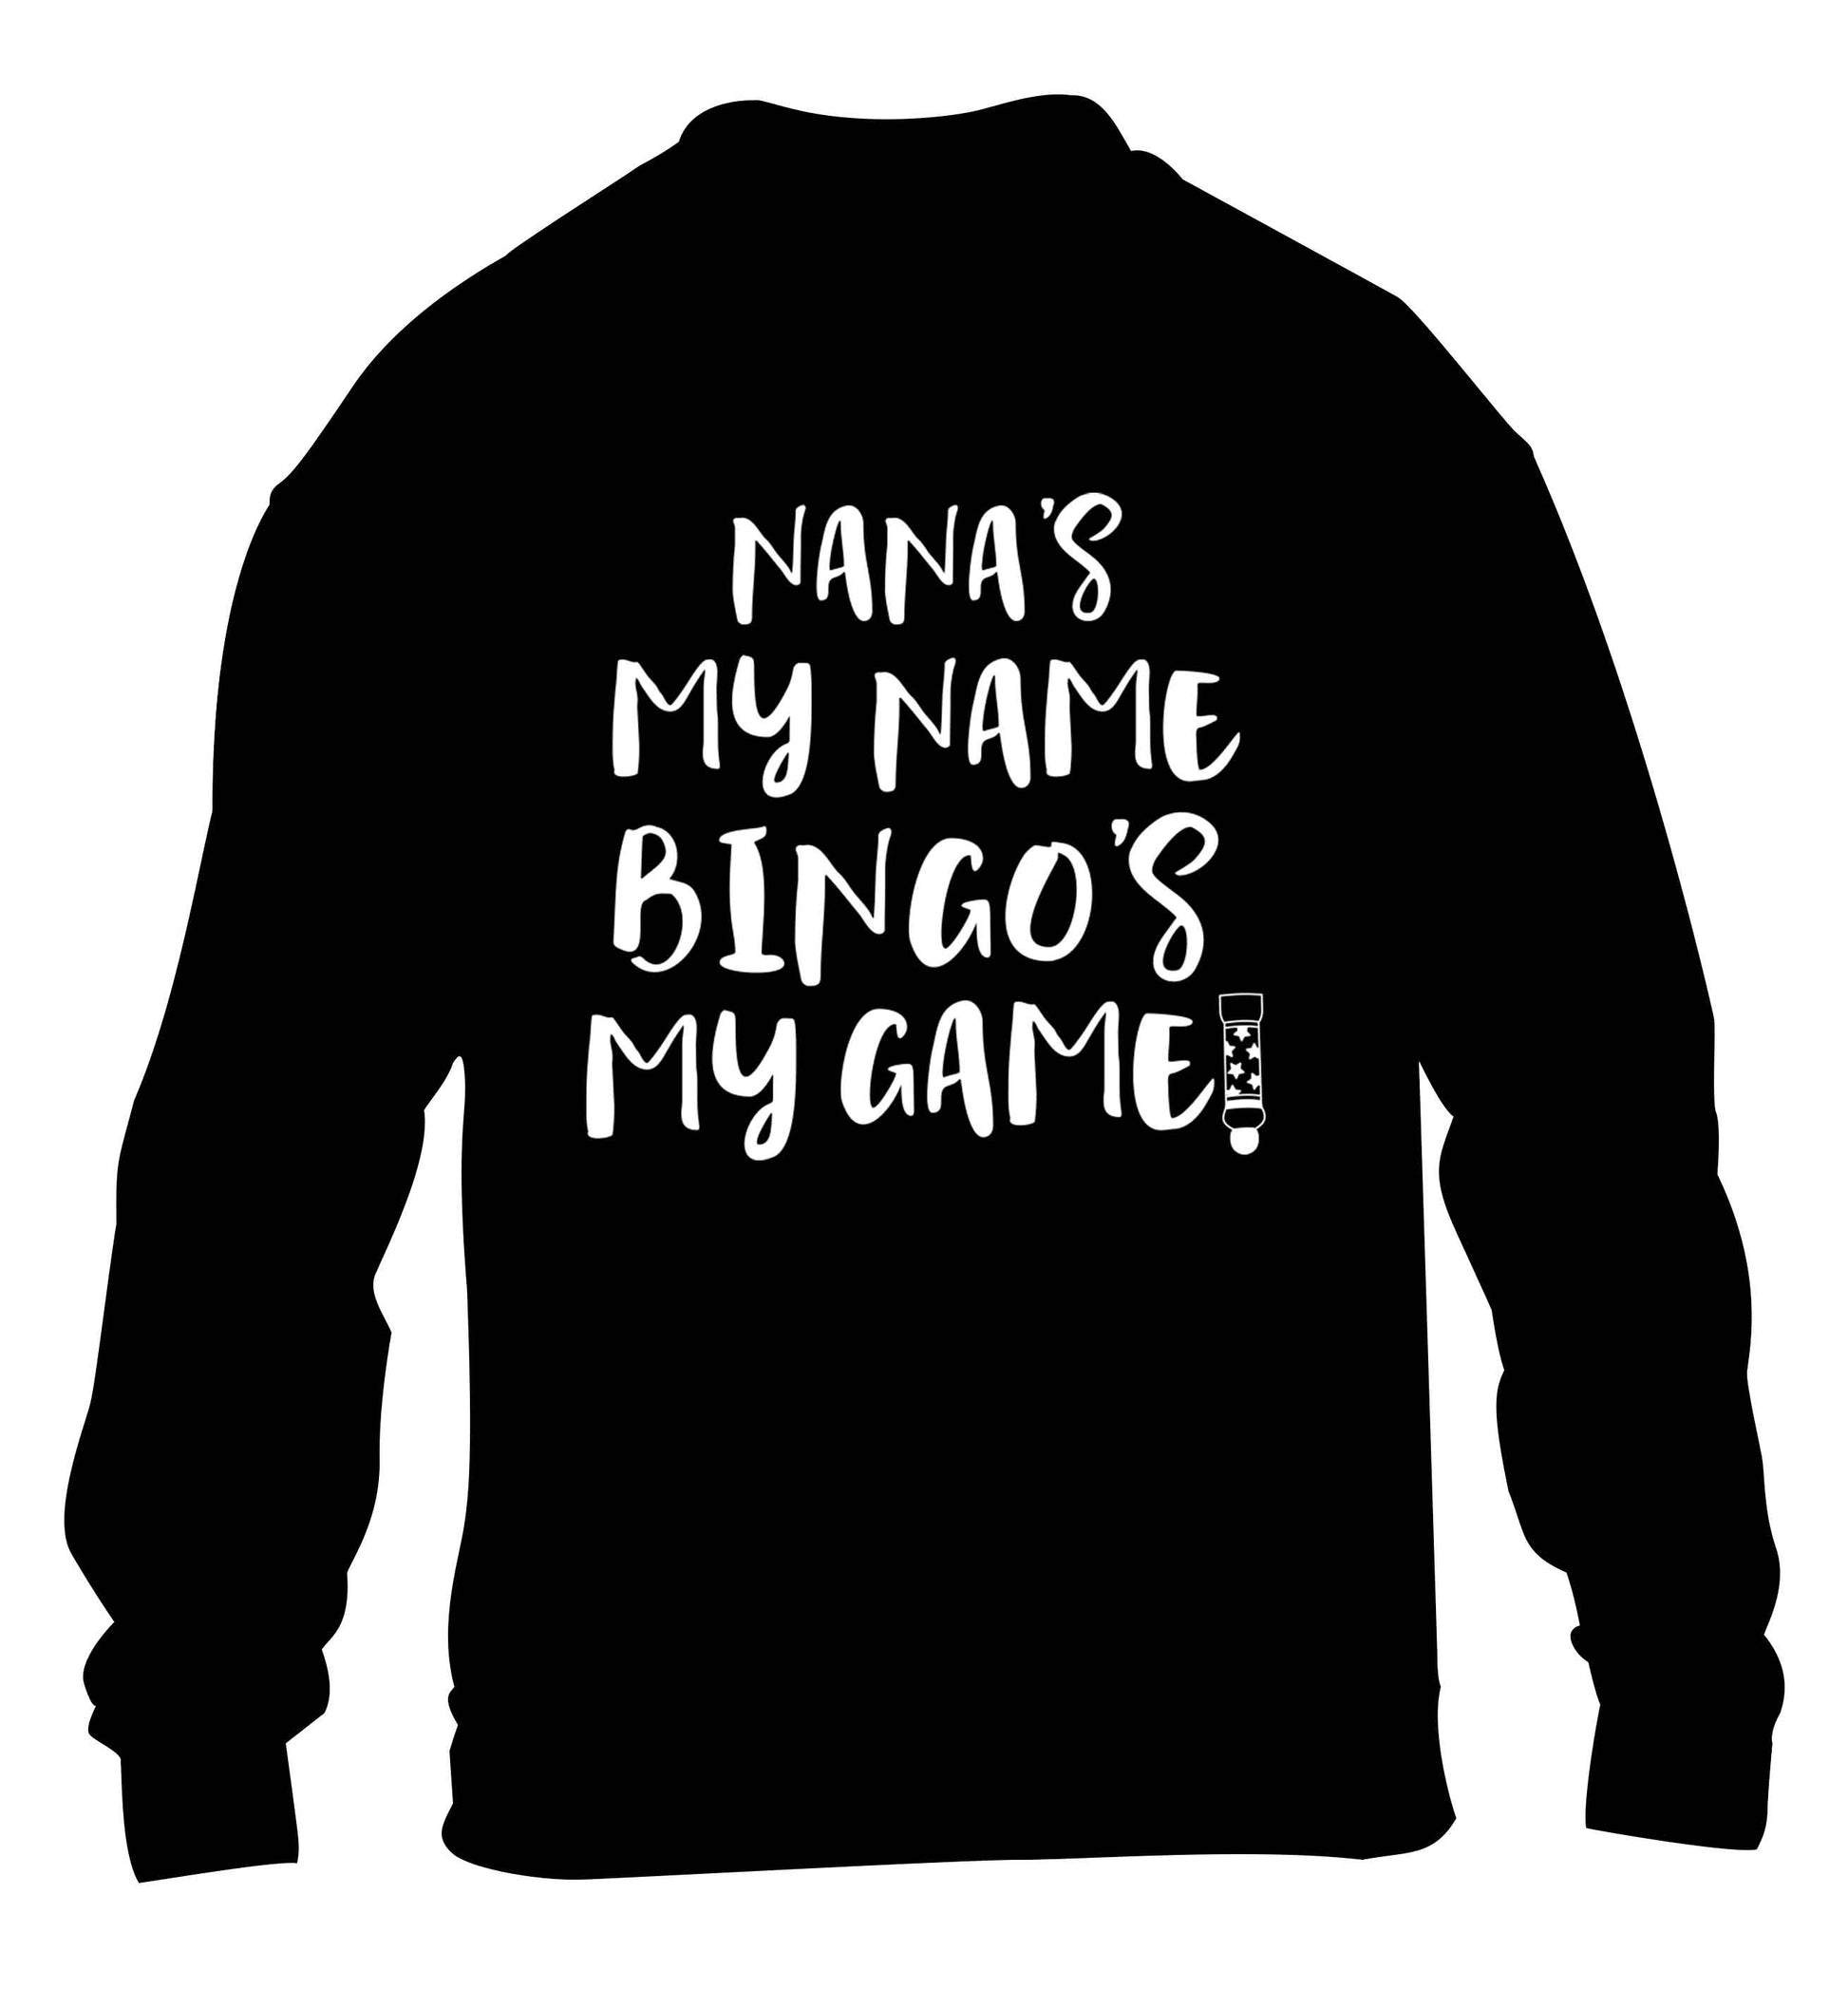 Nana's my name bingo's my game! children's black sweater 12-13 Years